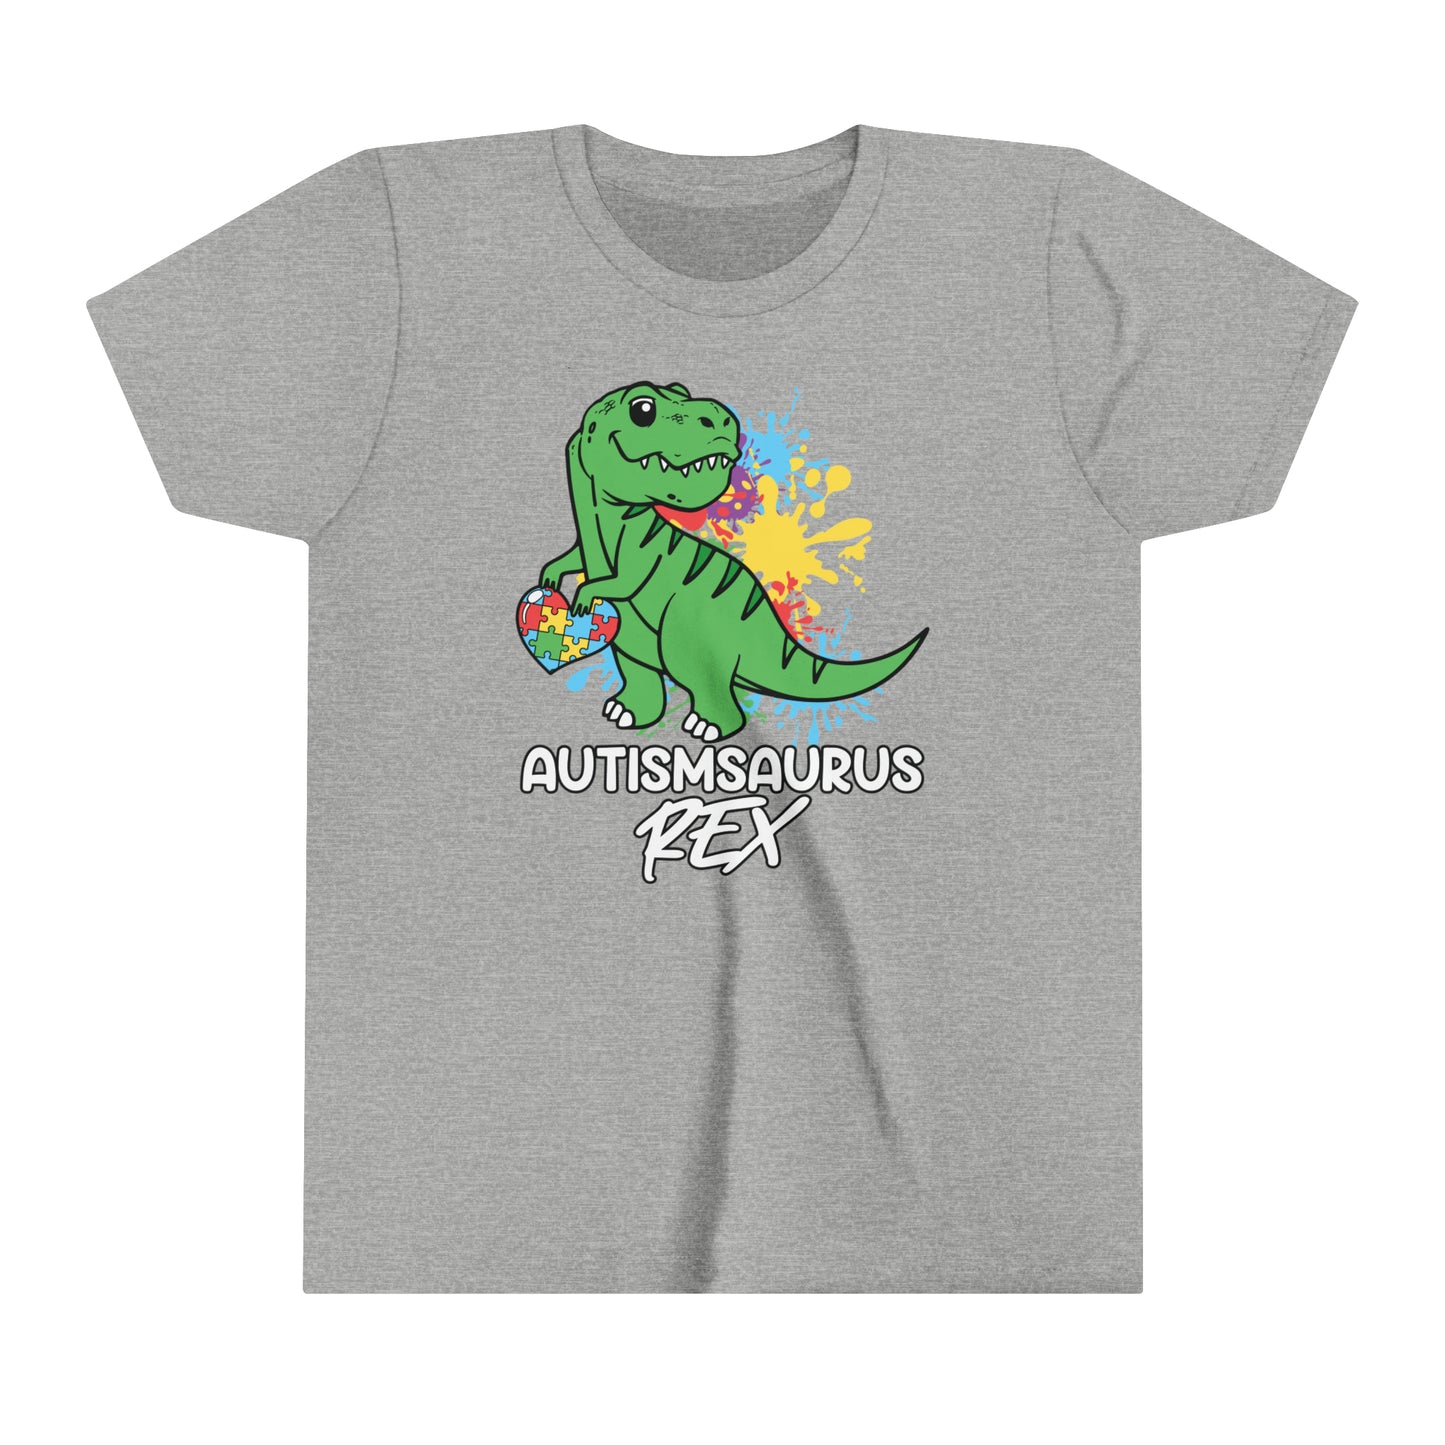 Autism Dinosaur shirt, youth shirt